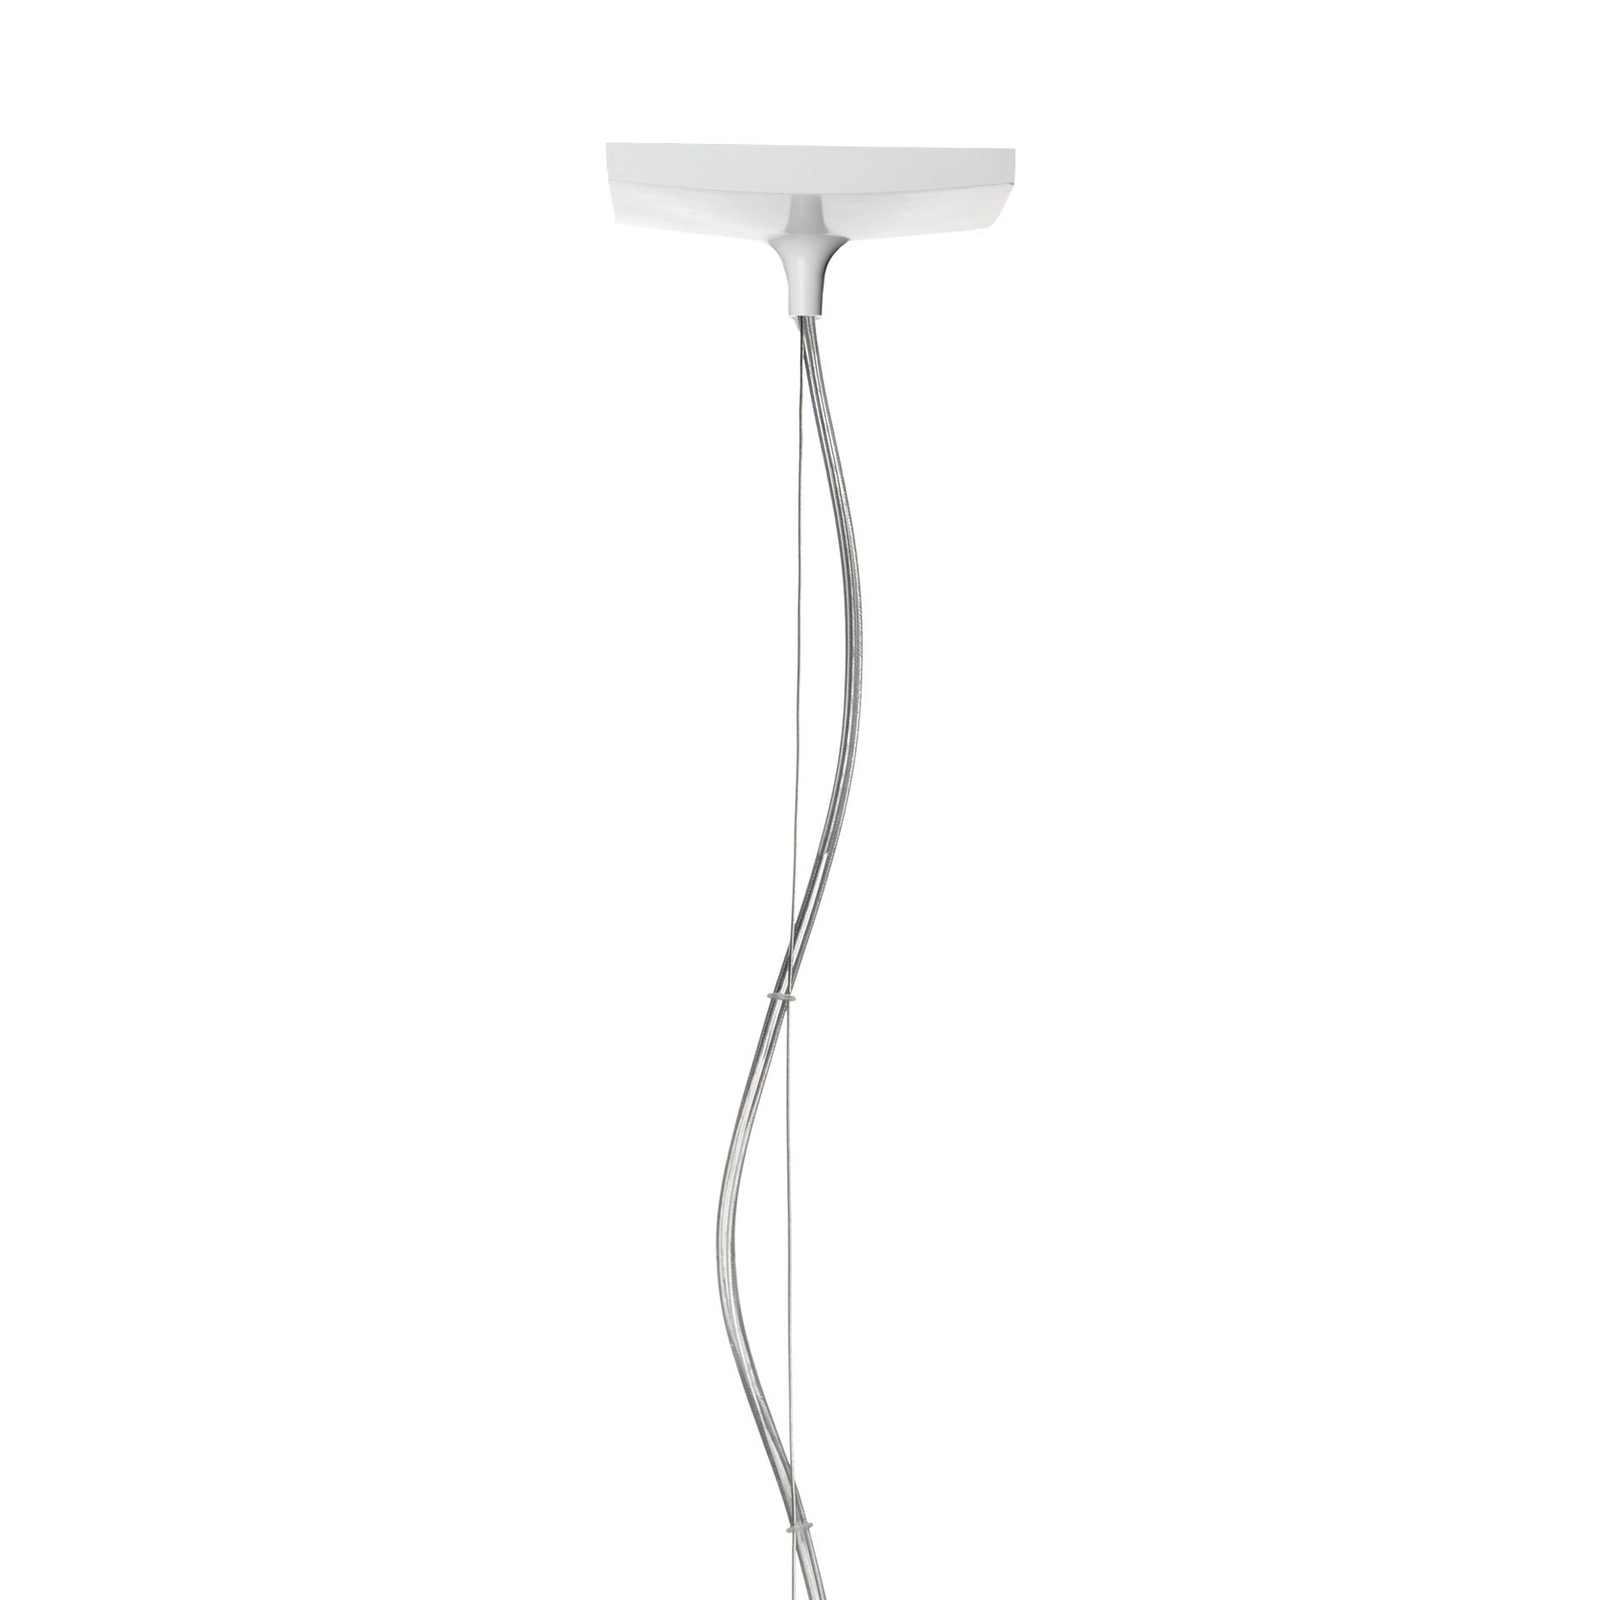 Kartell Light-Air LED hanglamp, barnsteen